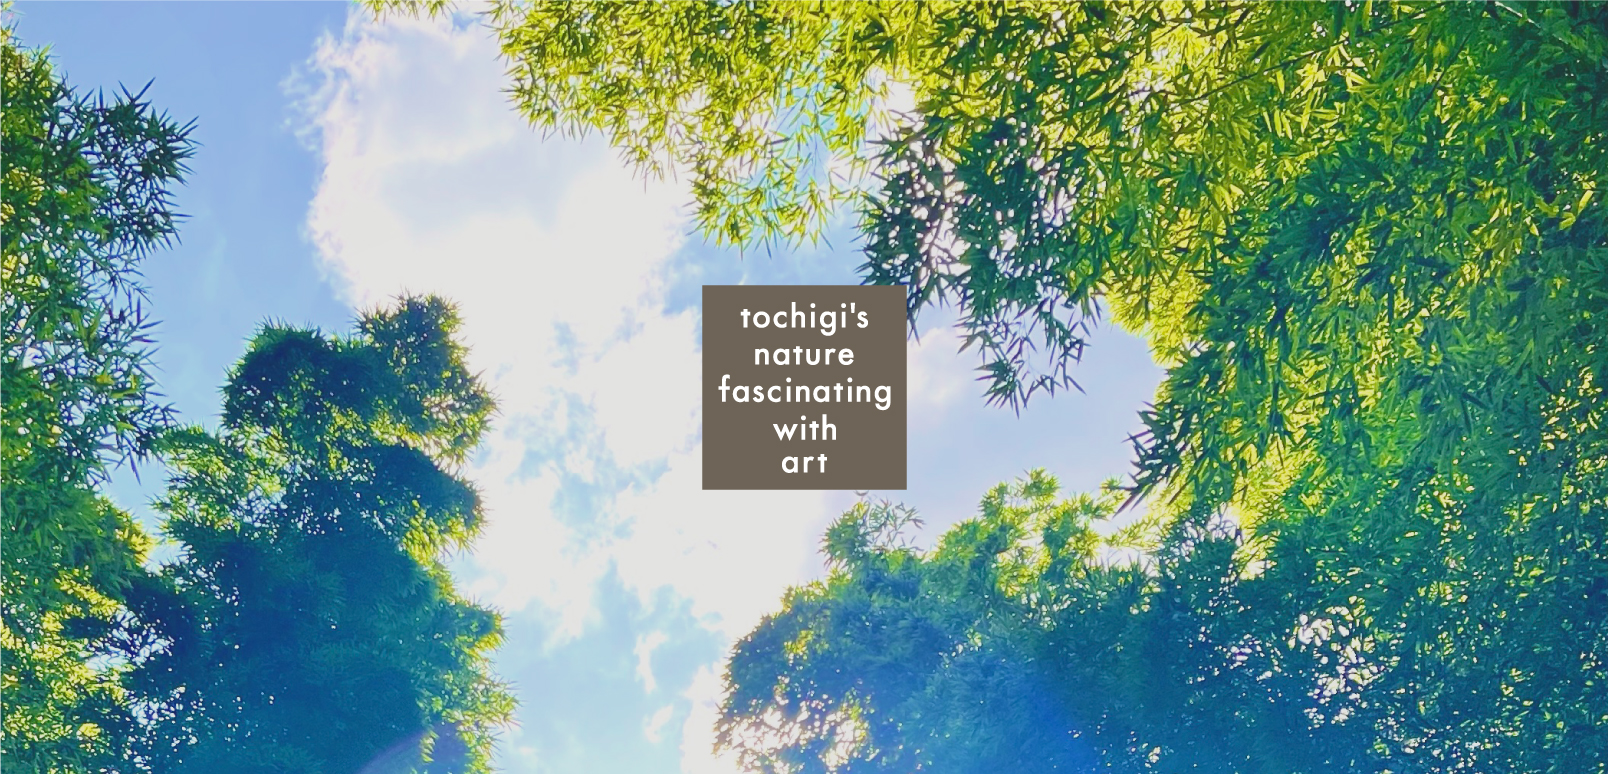 芸術で魅せる栃木の自然